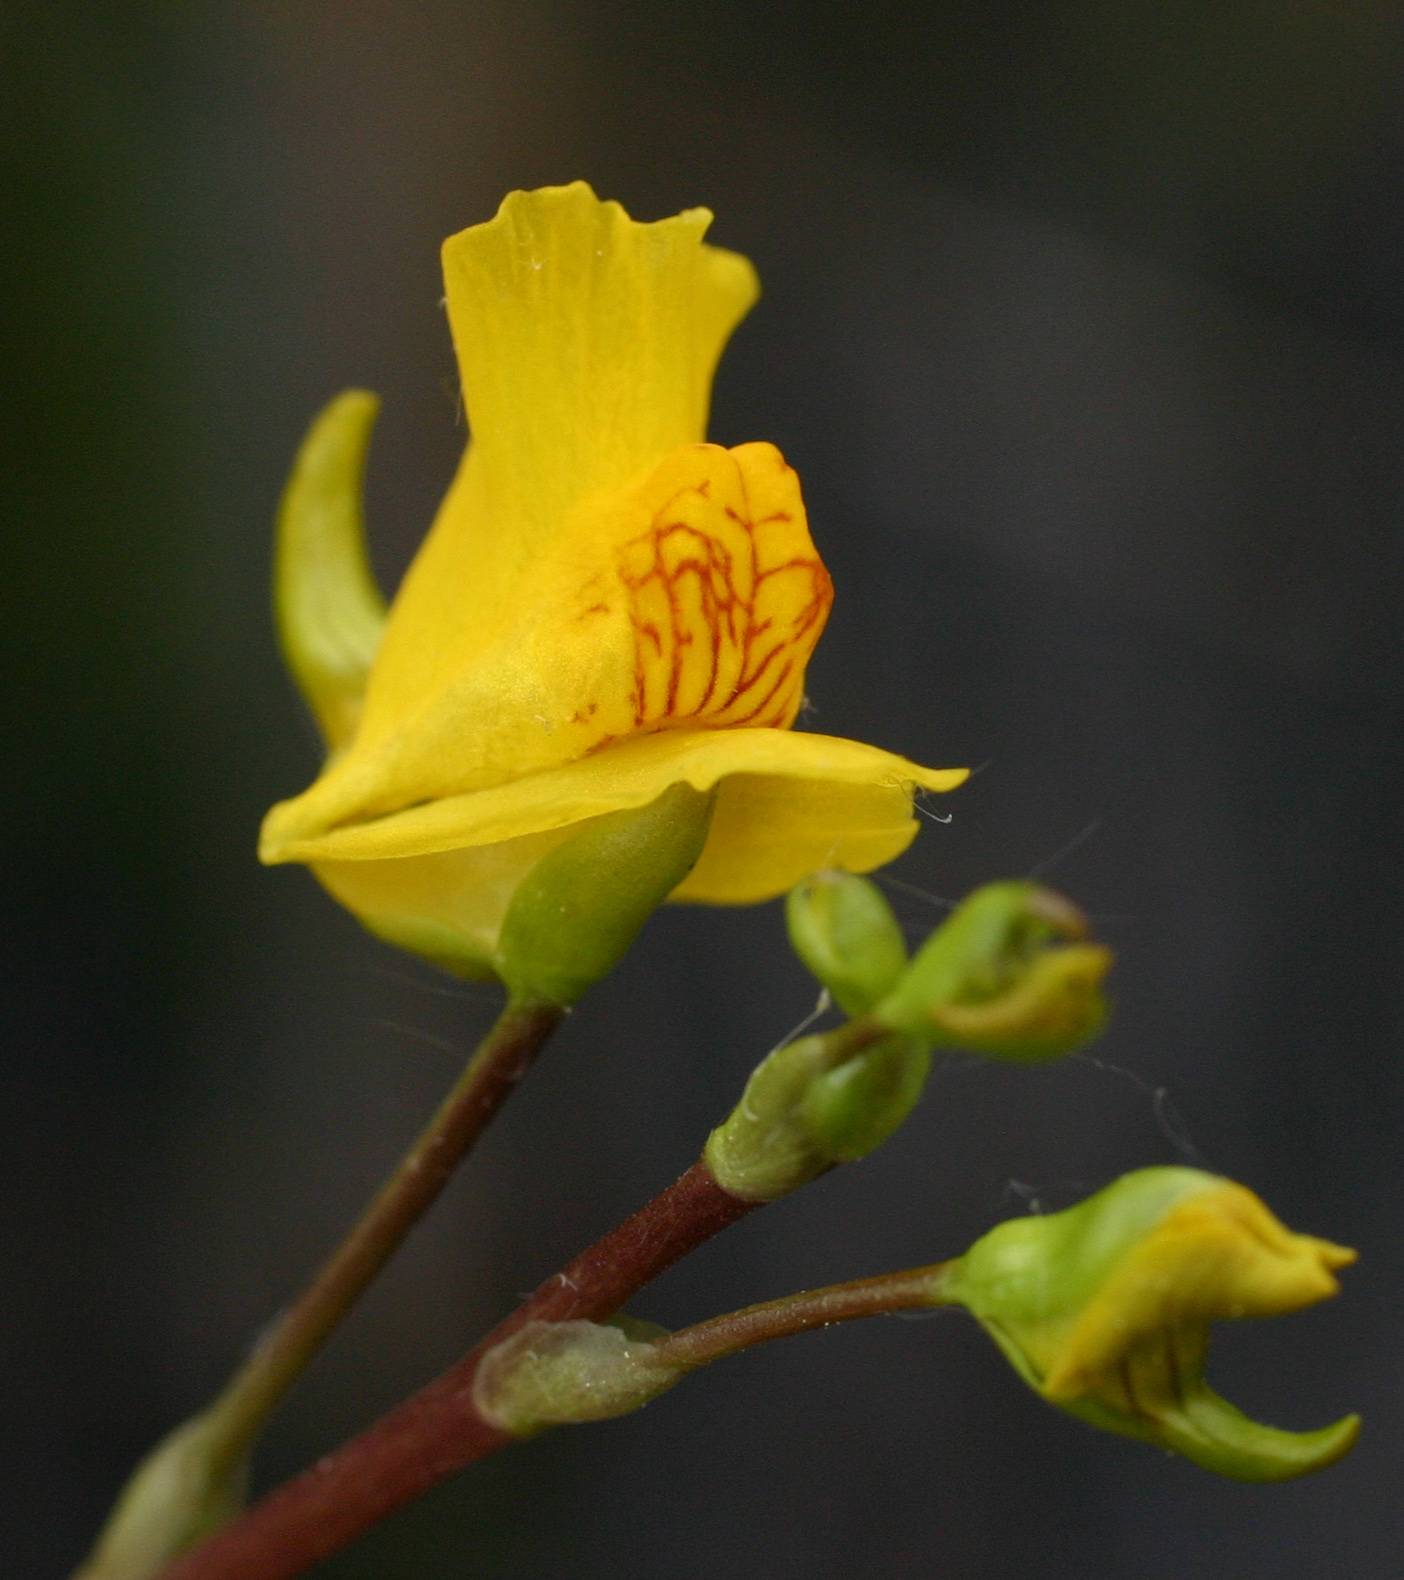 Utricularia image